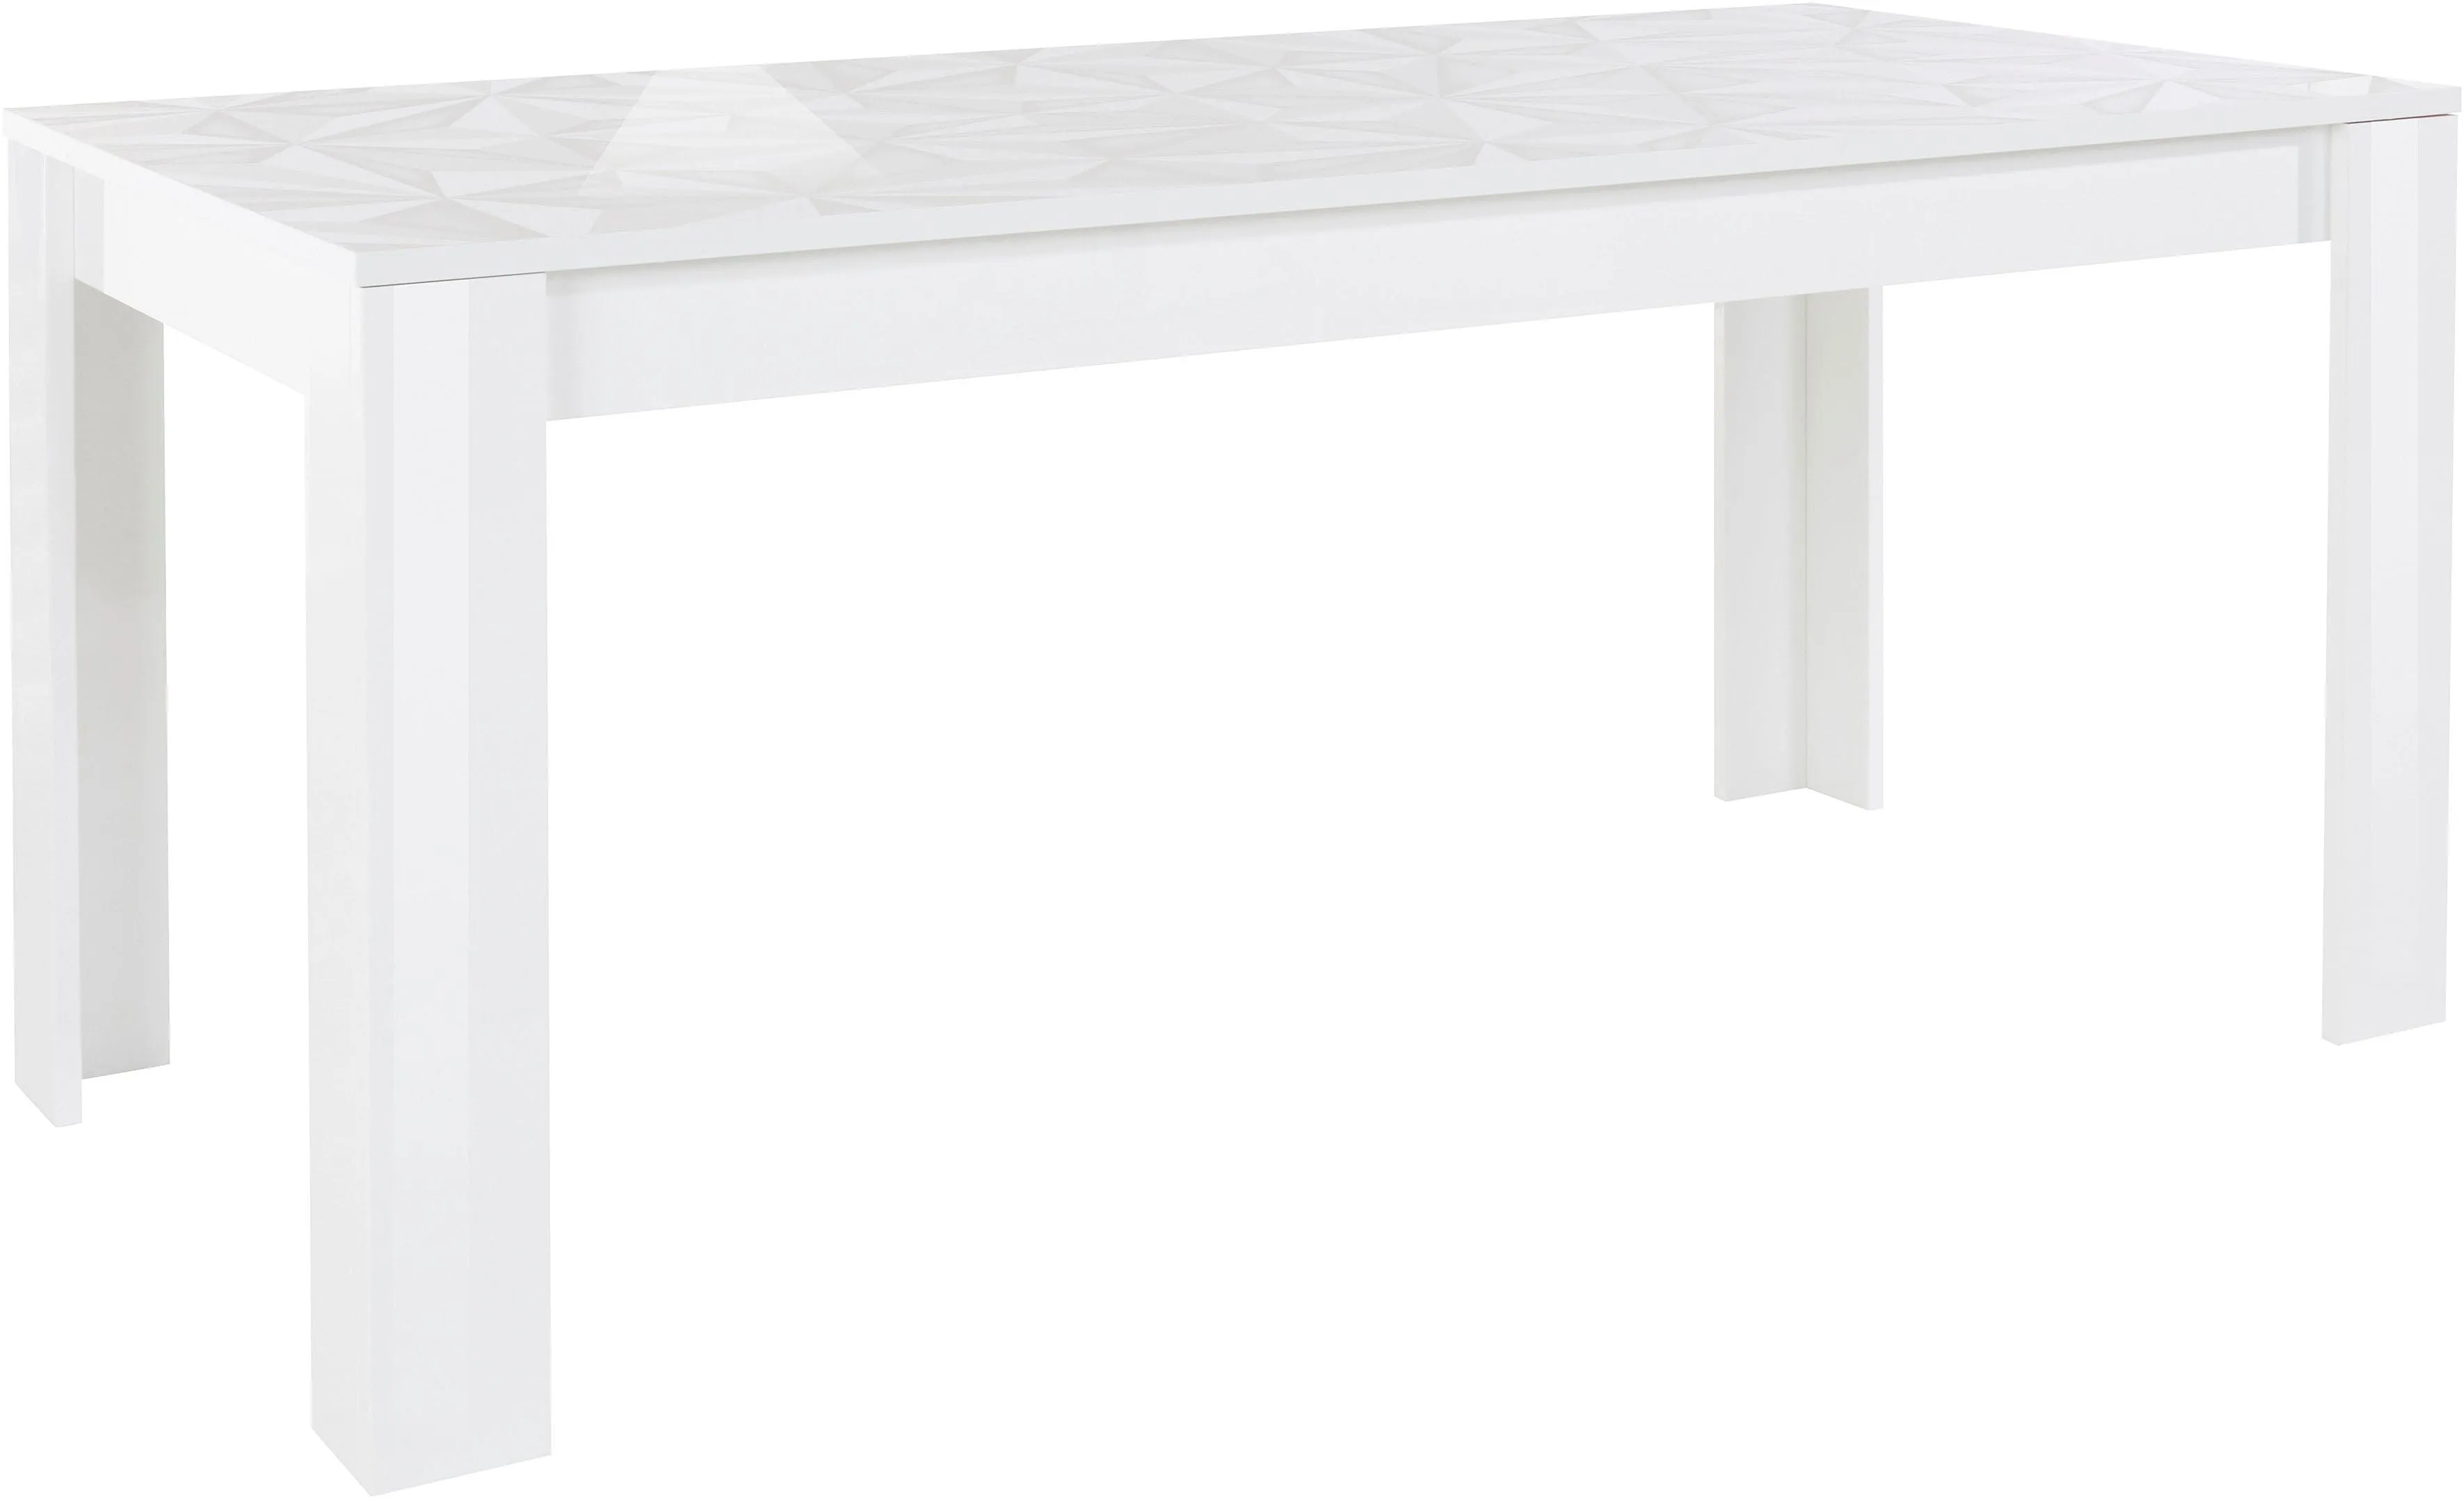 Esstisch INOSIGN "Prisma" Tische weiß (weiß hochglanz lack, mit siebdruck lack) Esstisch Rechteckiger Esstische rechteckig Breite 180 cm